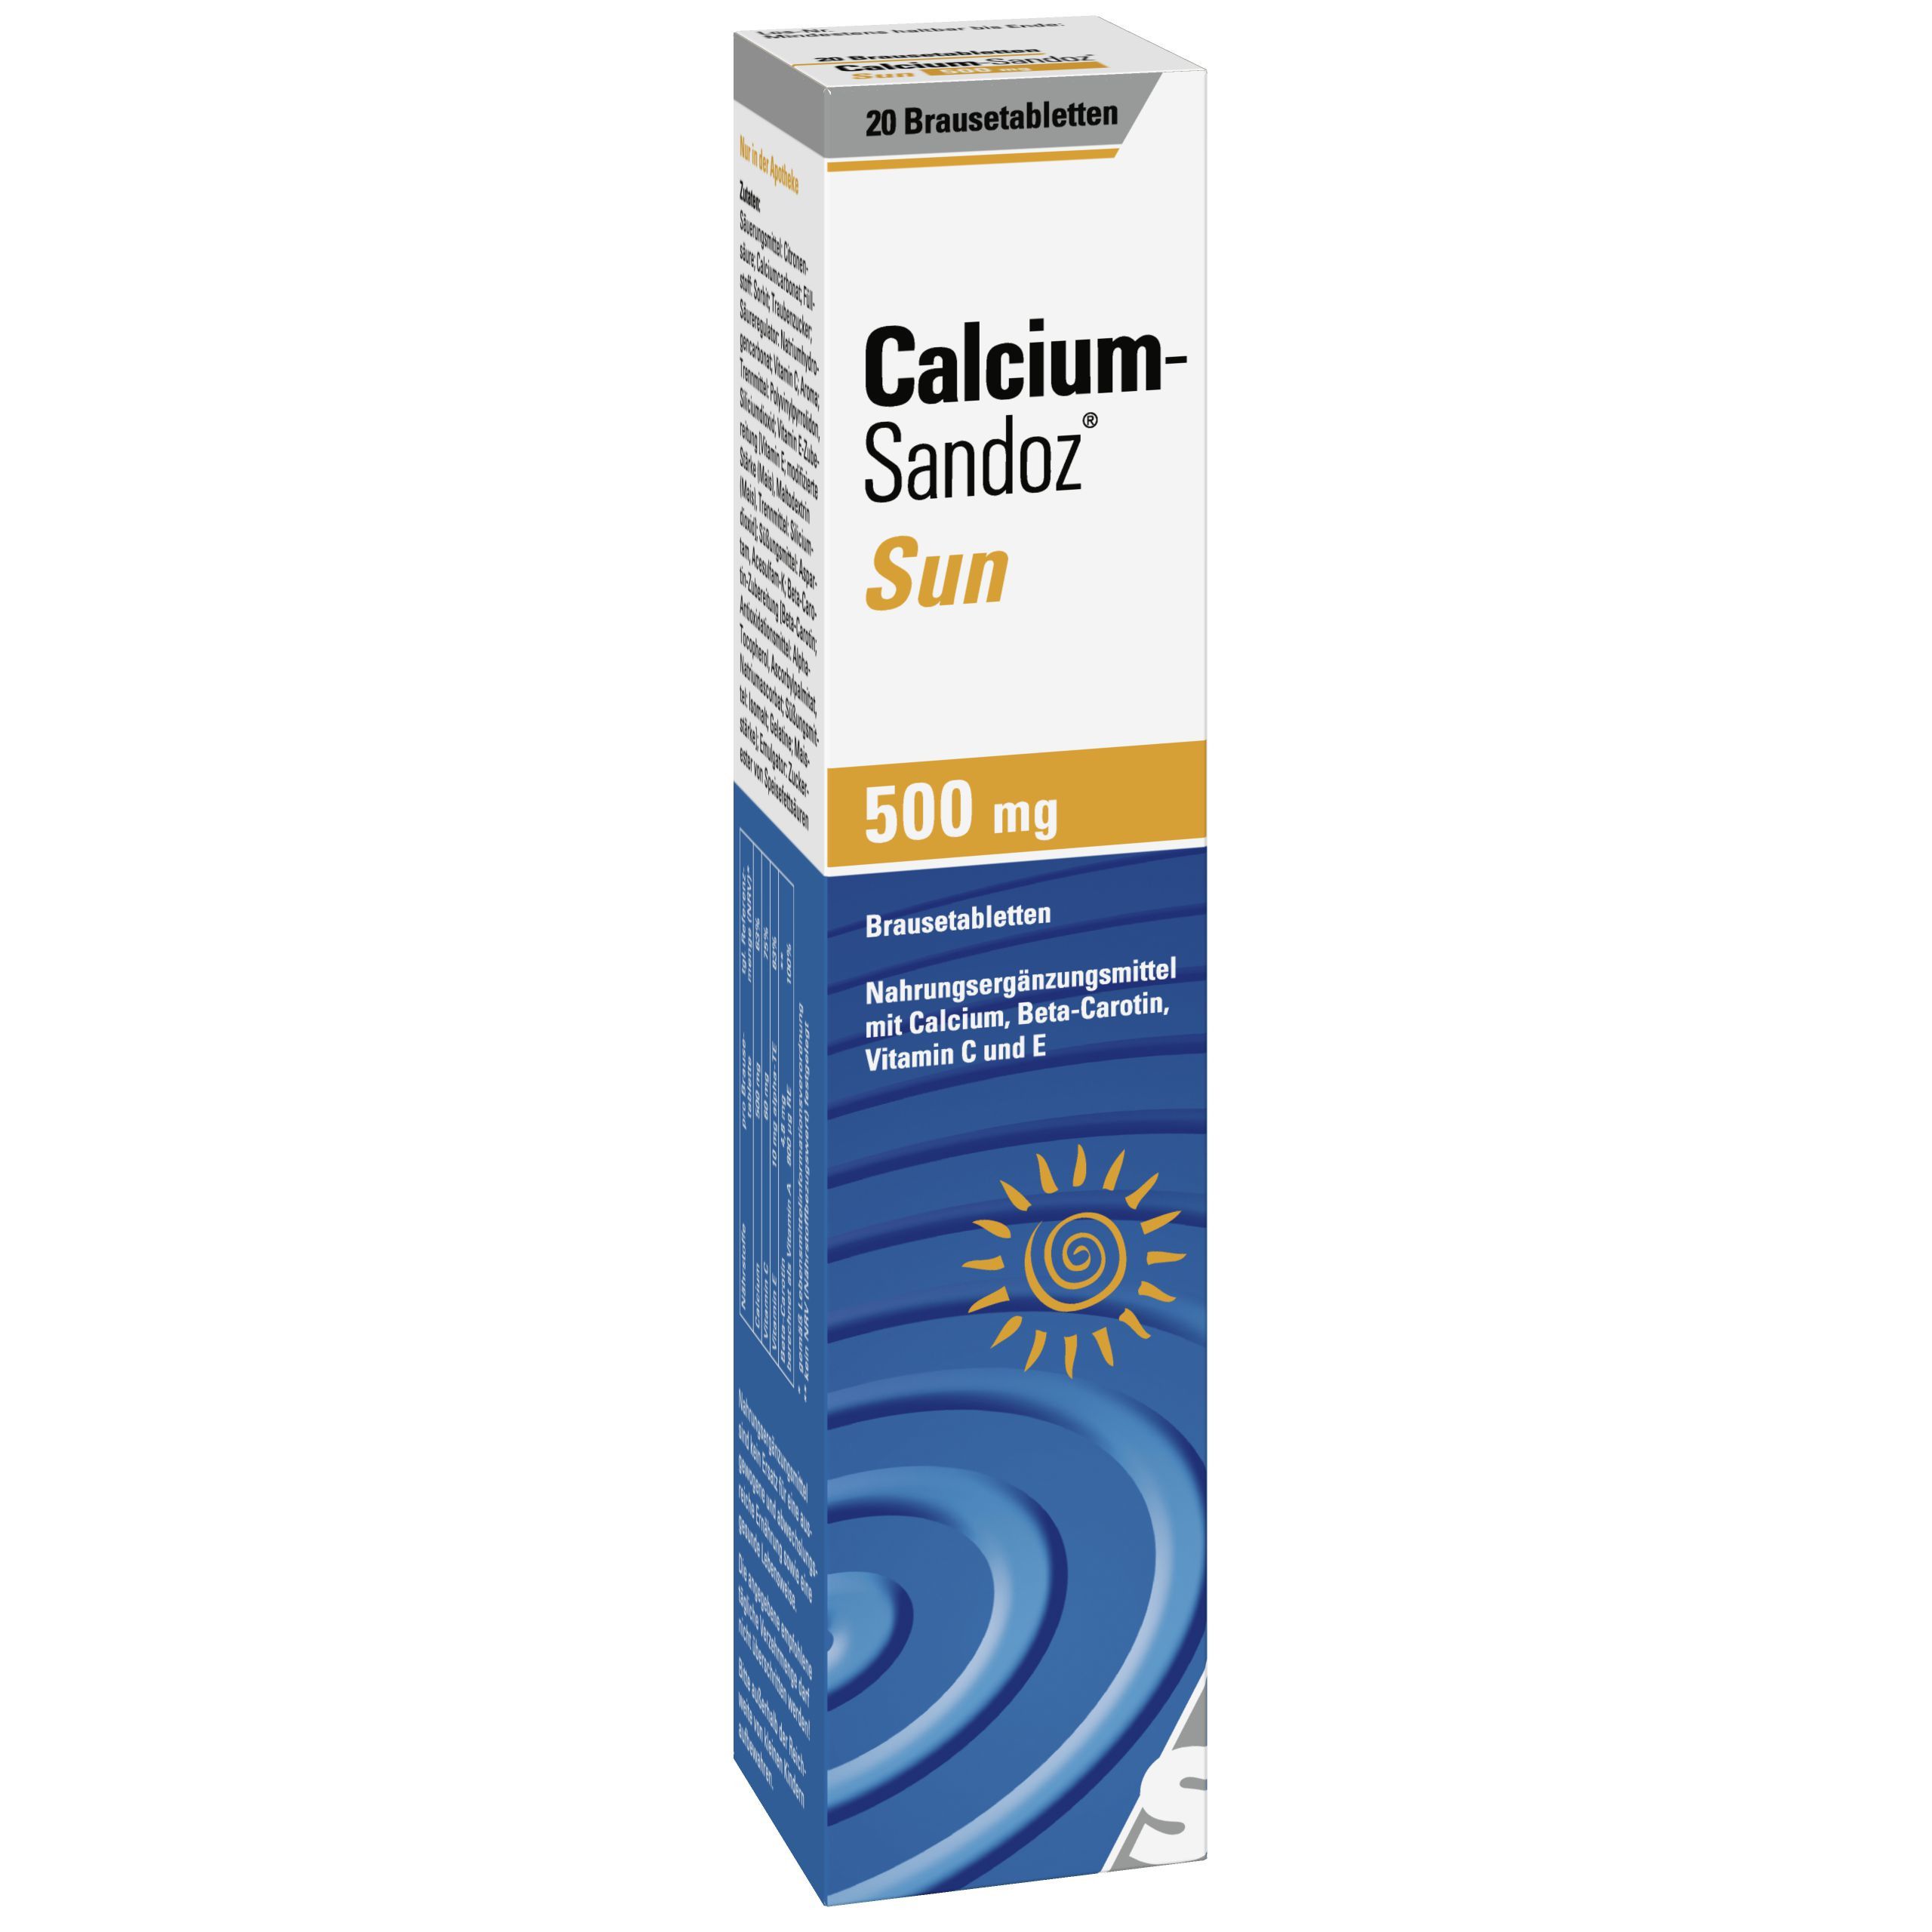 Calcium-Sandoz® Sun